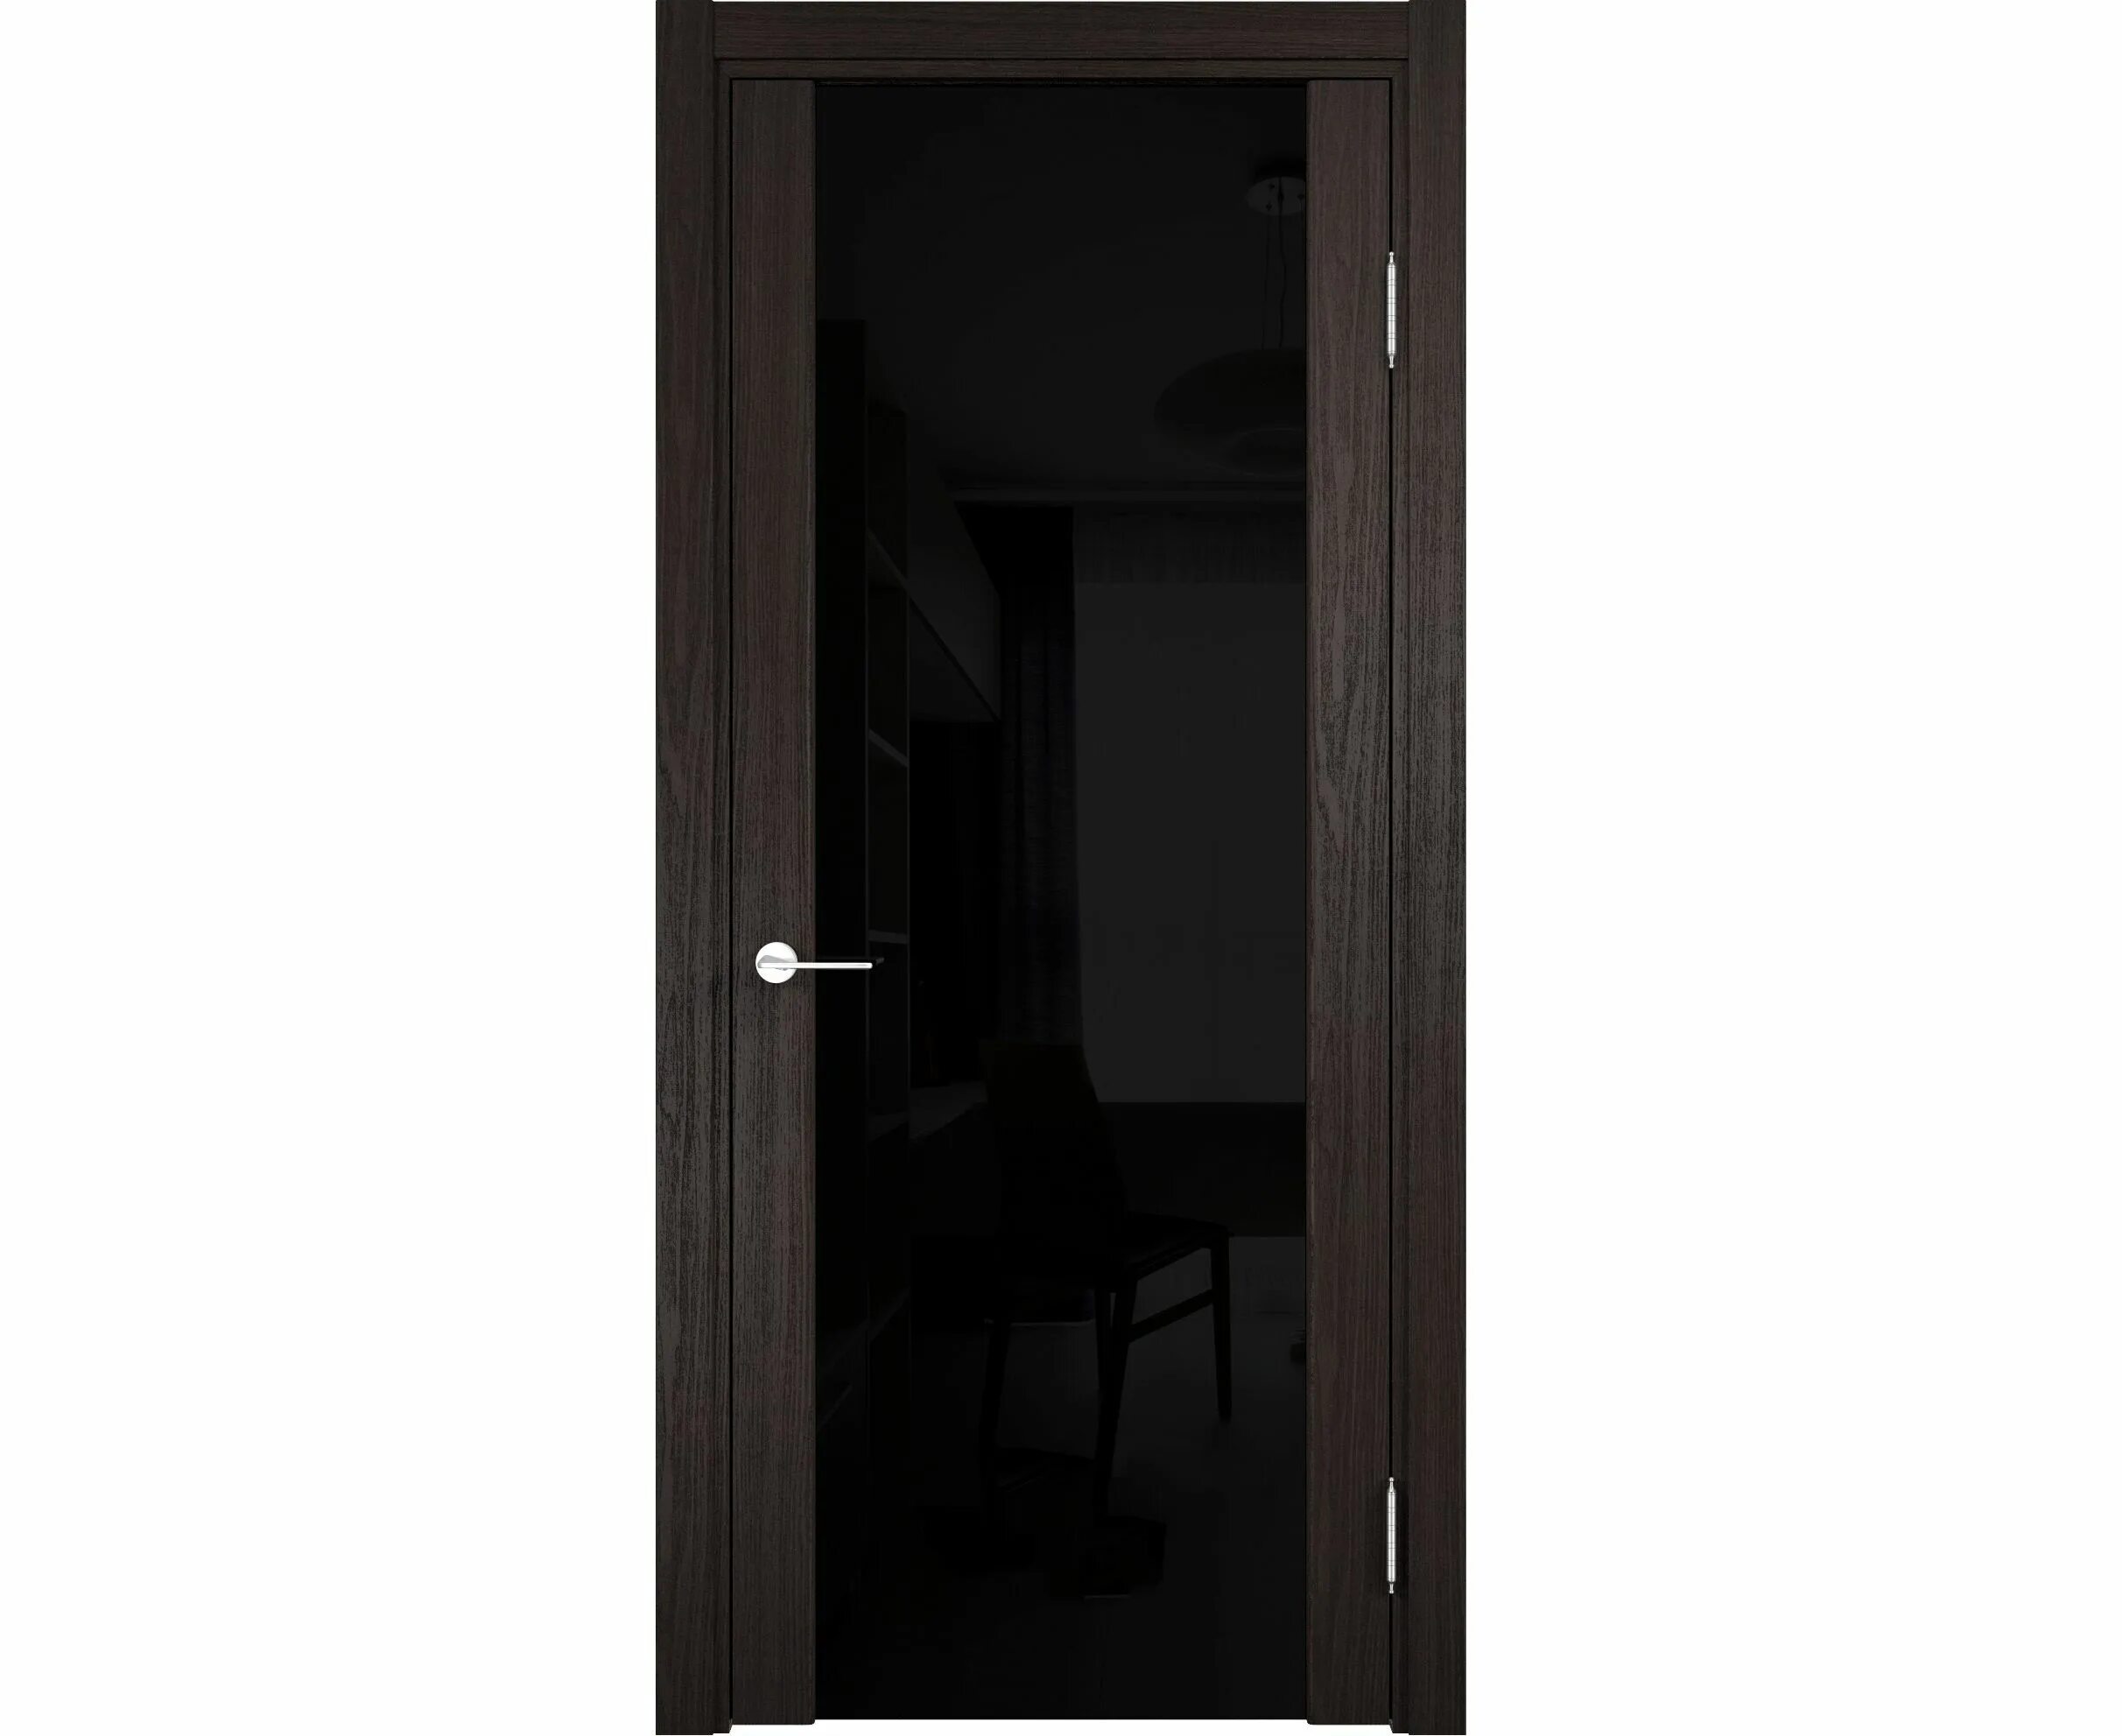 Дверь коричневая со стеклом. Двери межкомнатные Сан Ремо дуб шоколад. Дверь межкомнатная Сан-Ремо остекленная. Дверь Фрамир триплекс 70 венге. Дверь Сан Ремо со стеклом венге.